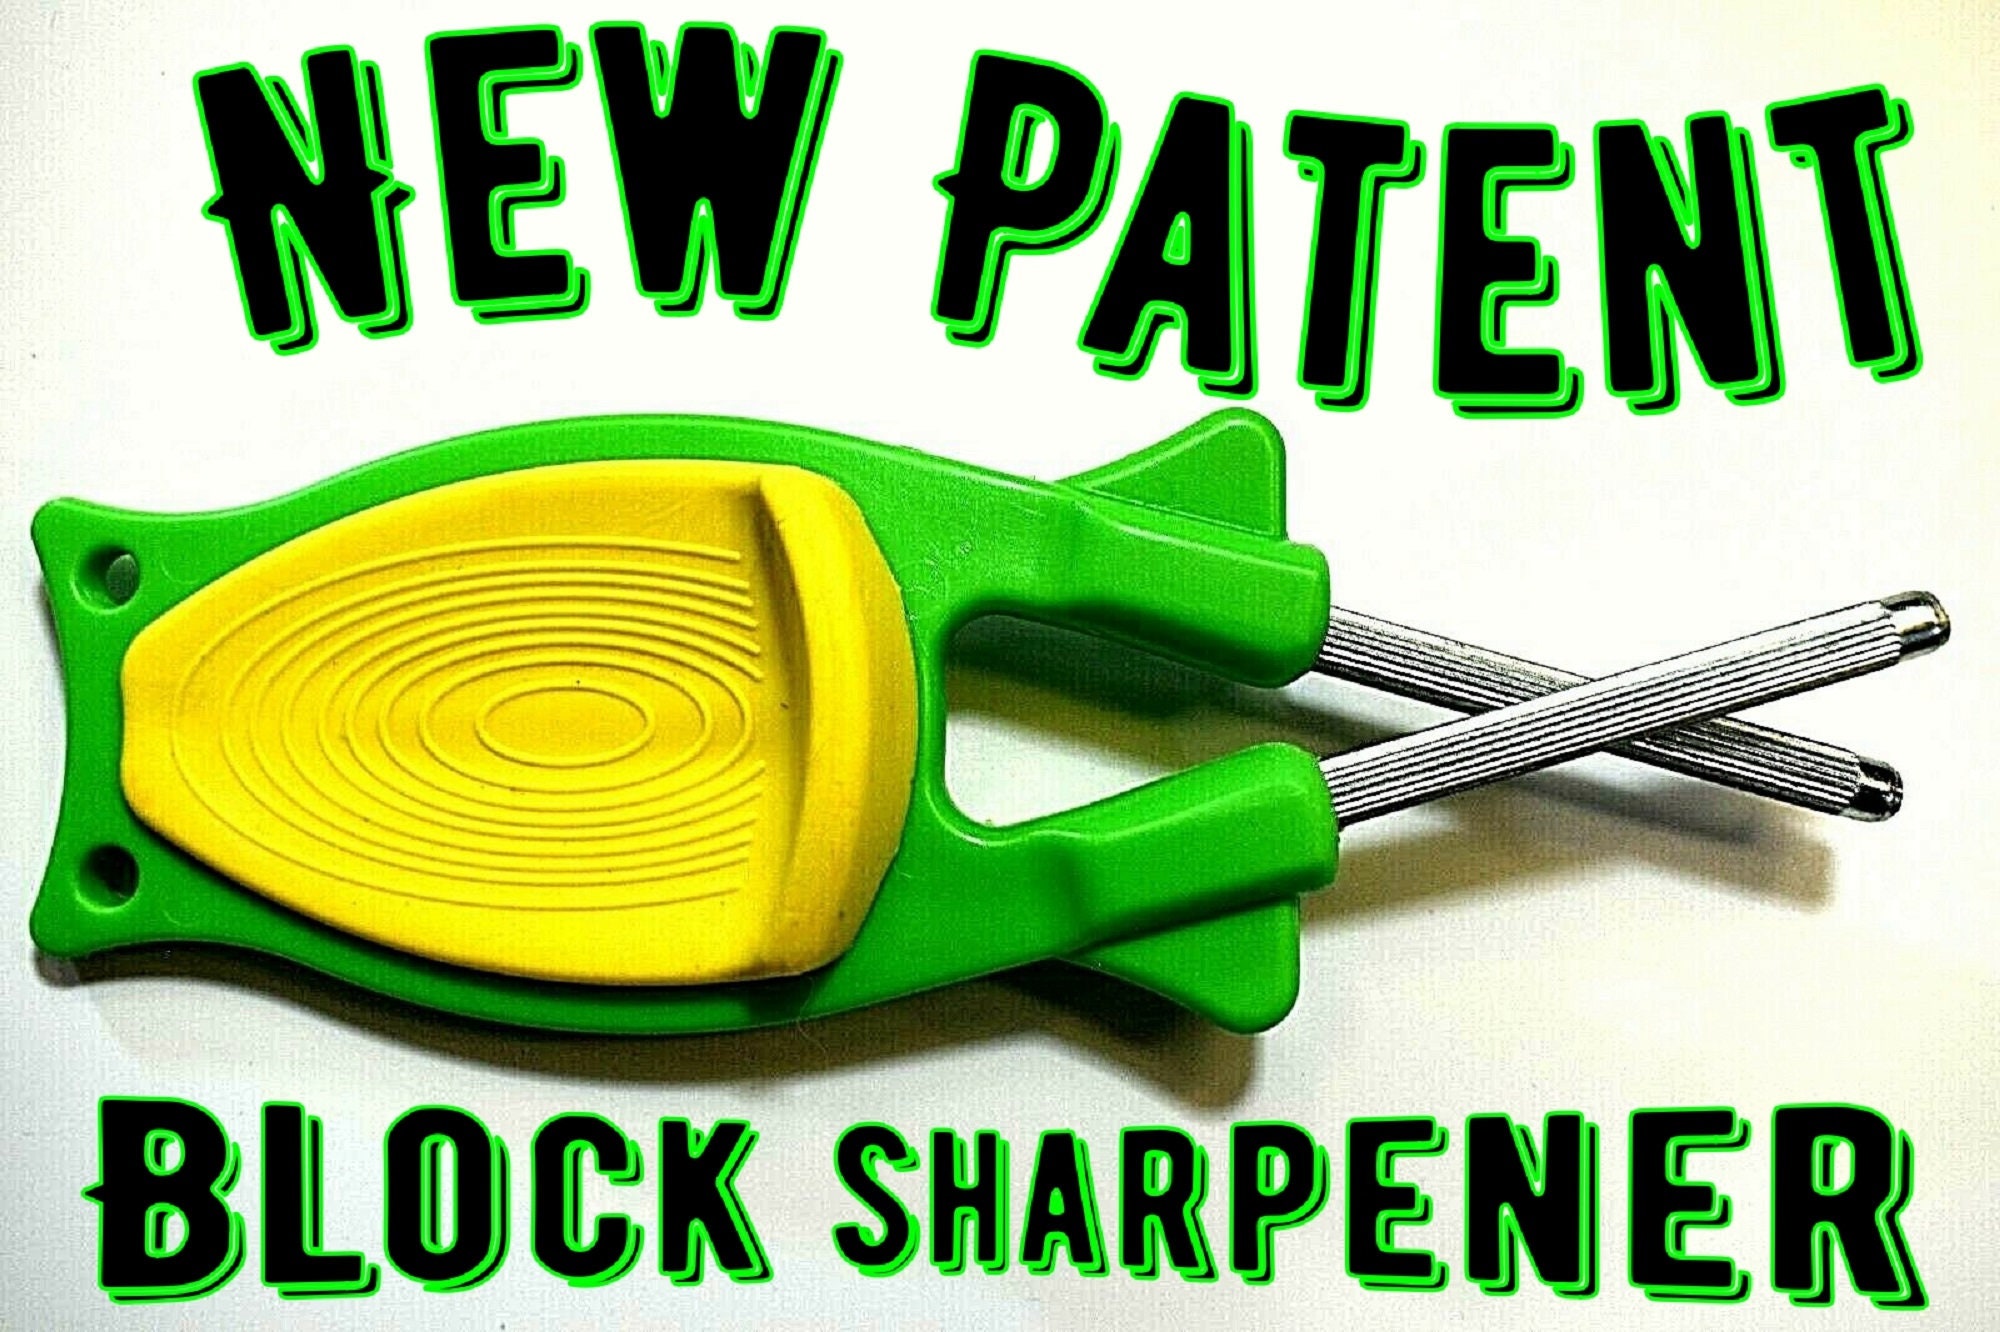 The Block Sharpener - Knife Sharpener